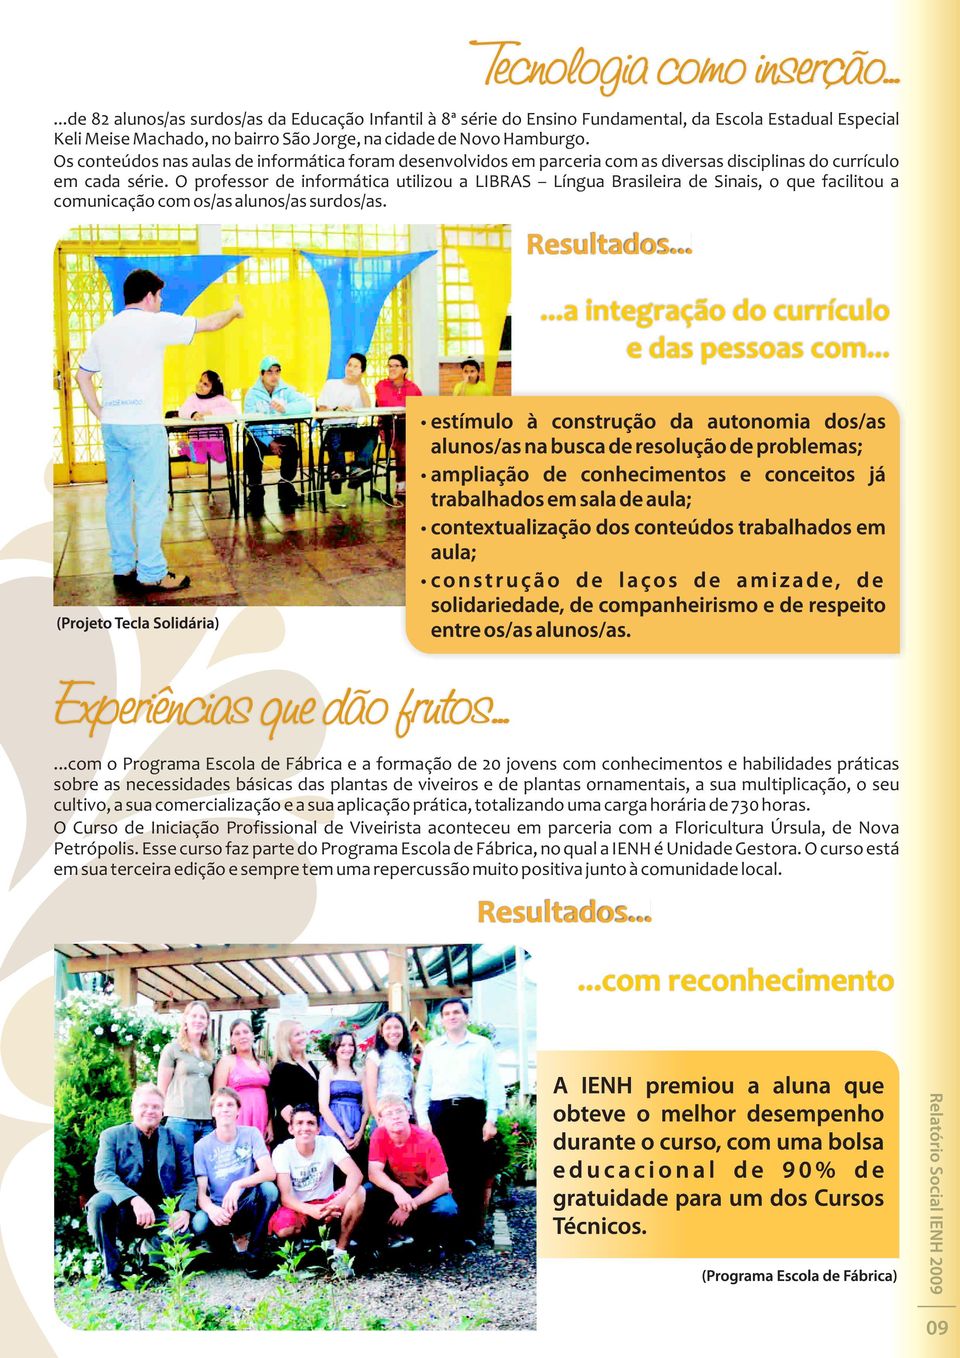 O professor de informática utilizou a LIBRAS Língua Brasileira de Sinais, o que facilitou a comunicação com os/as alunos/as surdos/as.